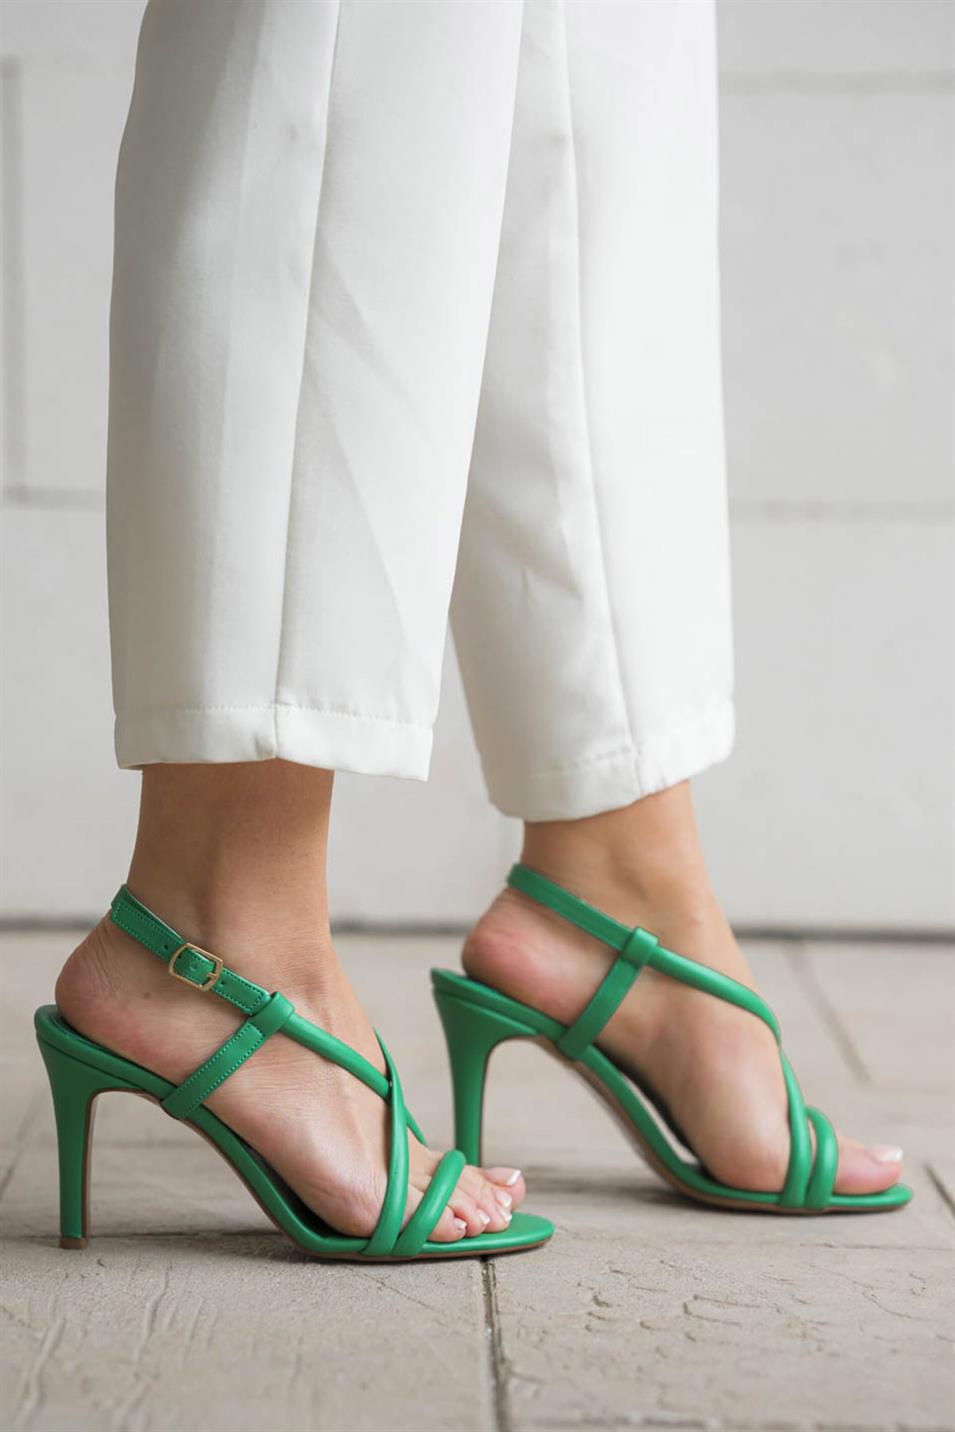 Limos İnce Bantlı Kadın Topuklu Deri Ayakkabı Çimen Yeşili